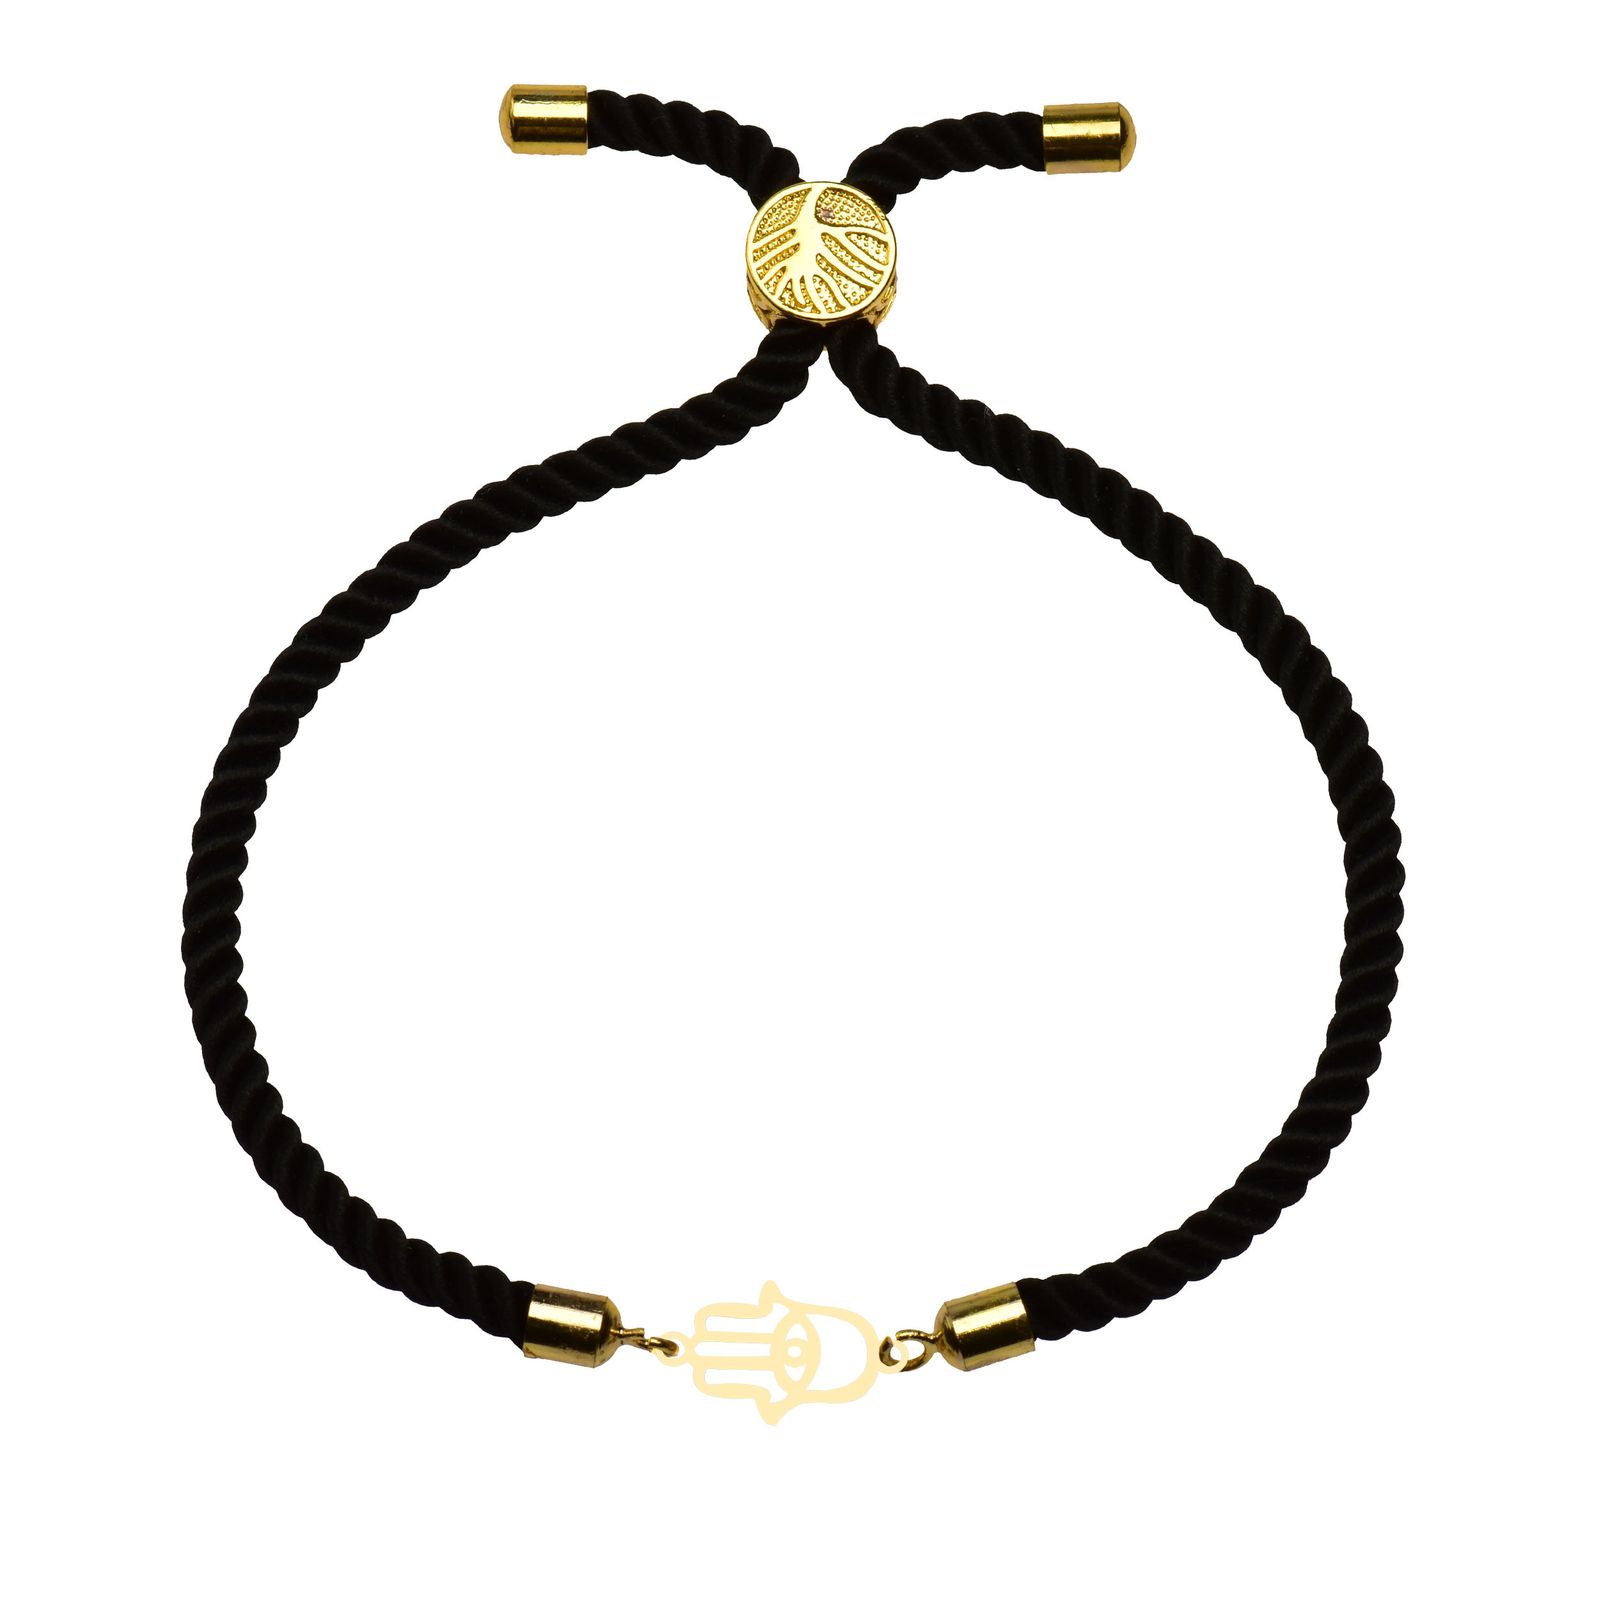 دستبند طلا 18 عیار زنانه کرابو طرح دست همسا مدل Kr102235 -  - 1